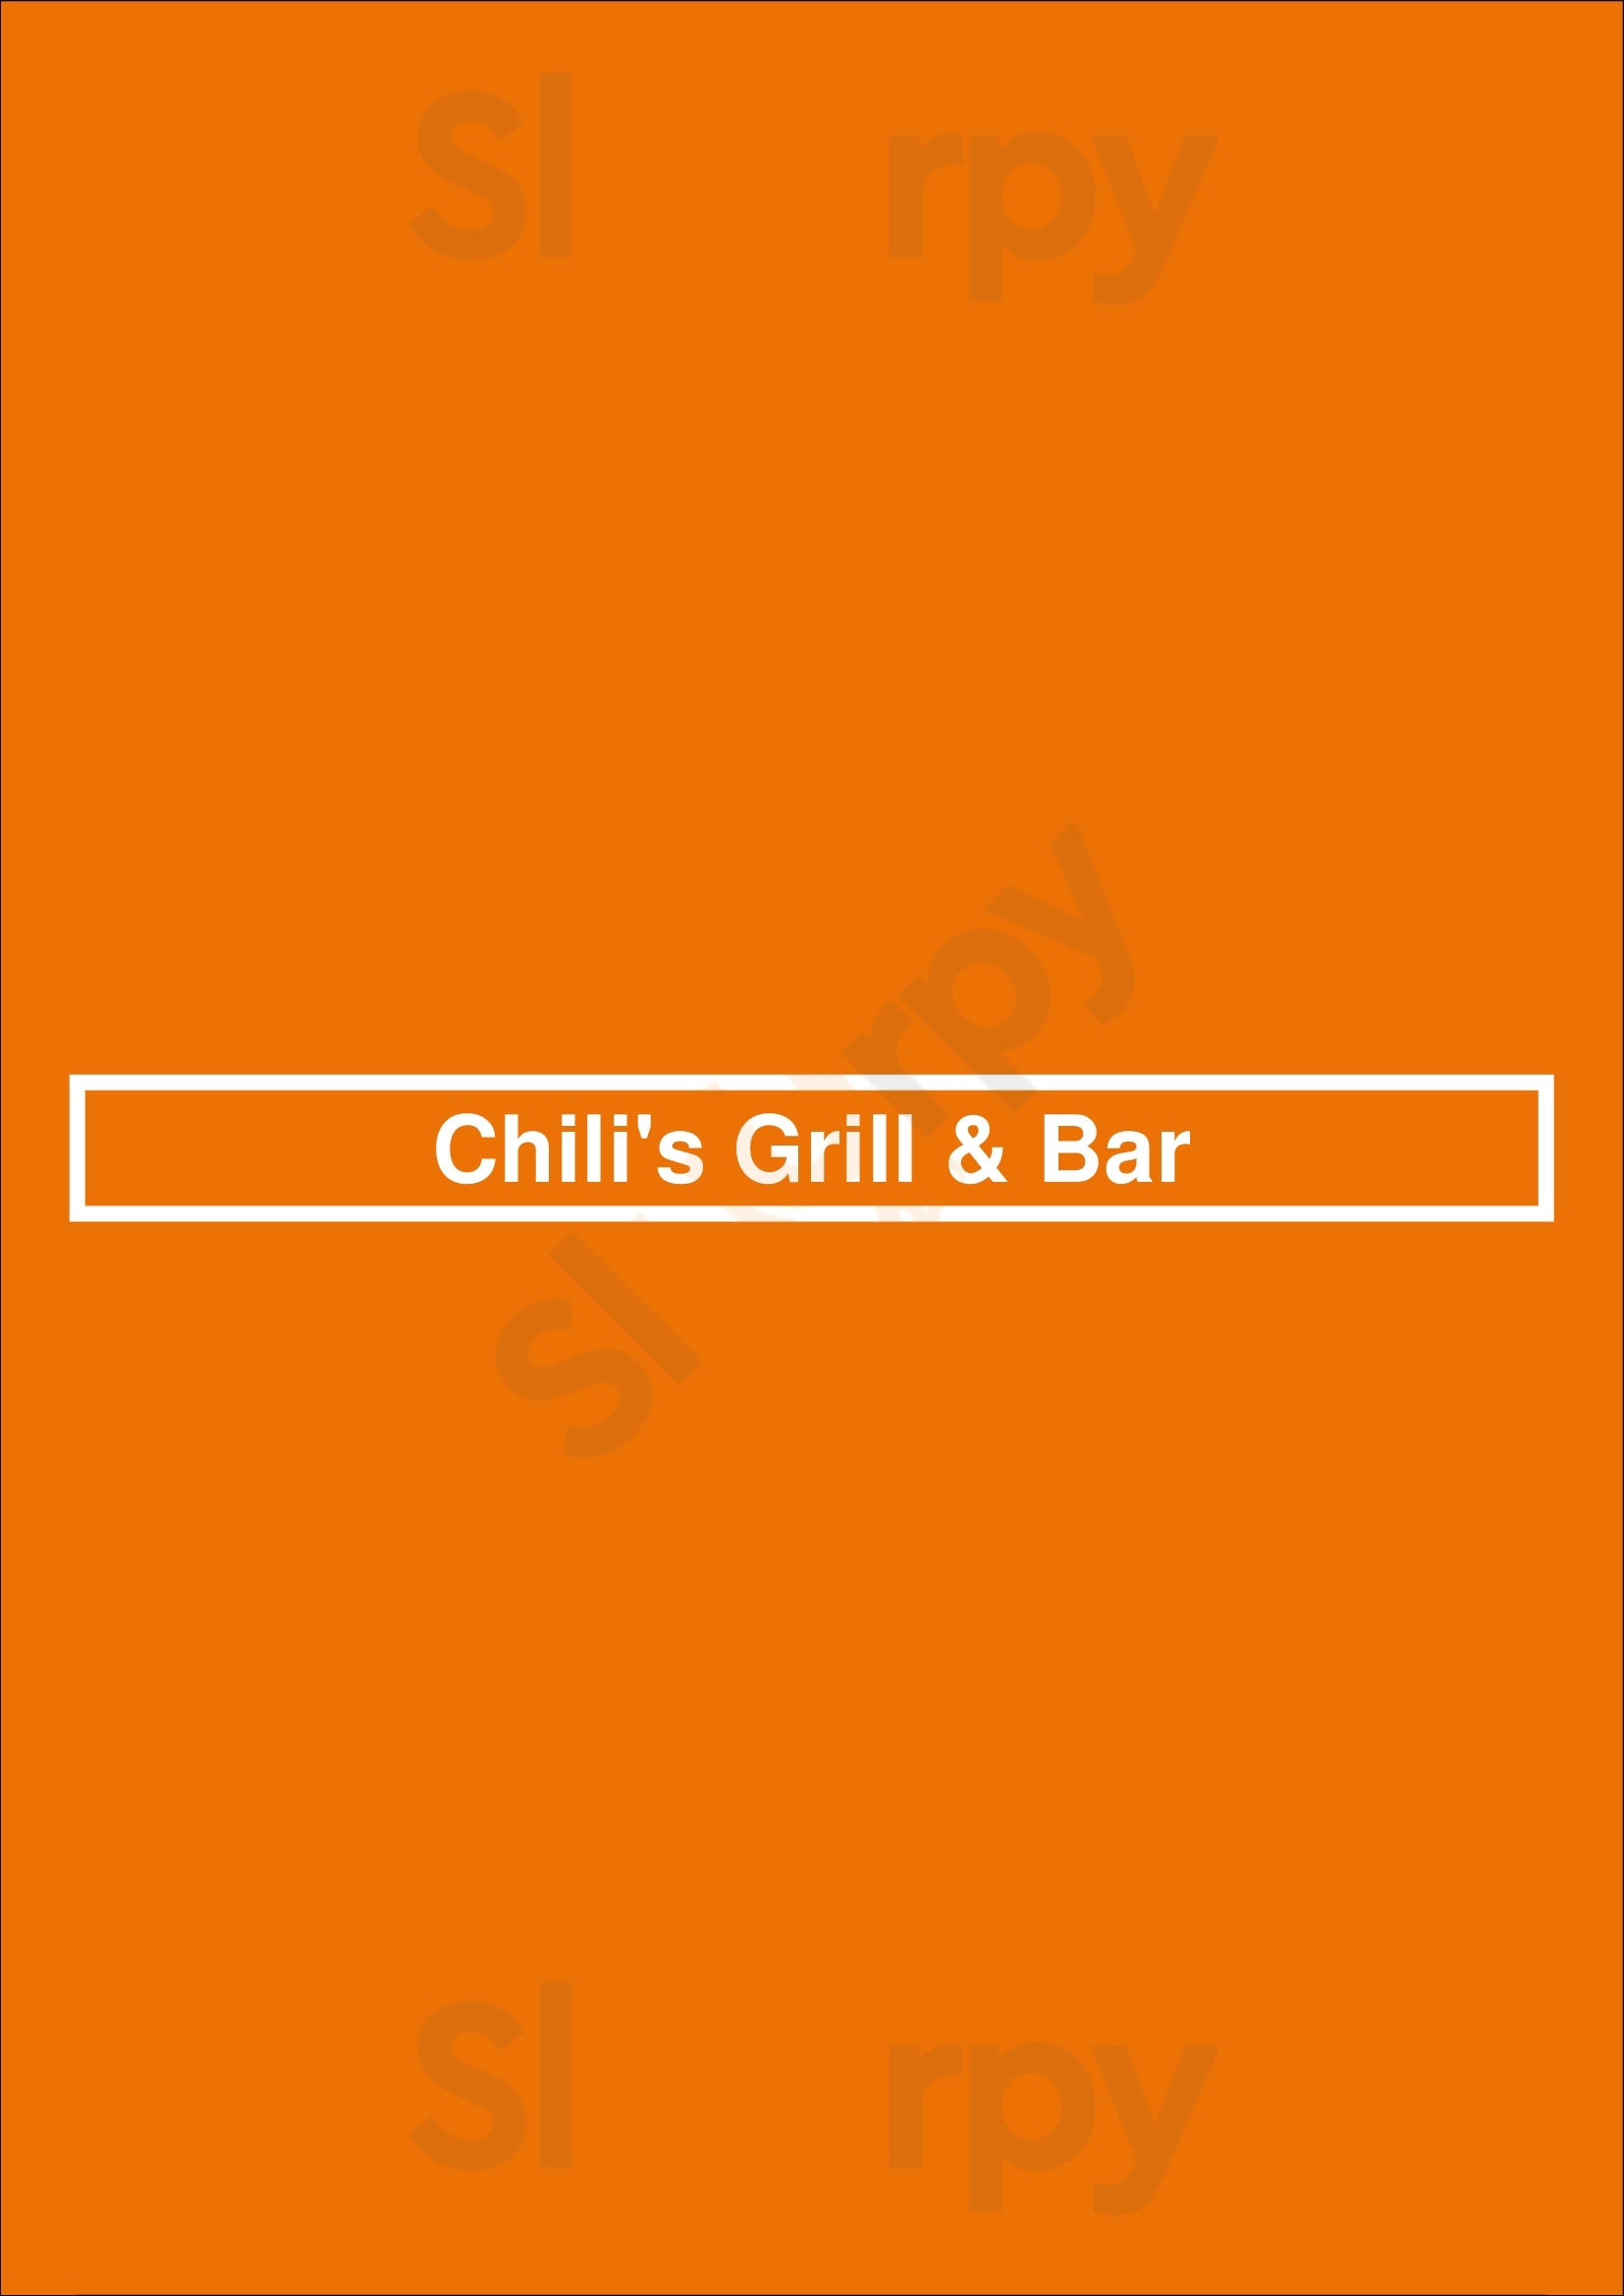 Chili's Grill & Bar Cumming Menu - 1